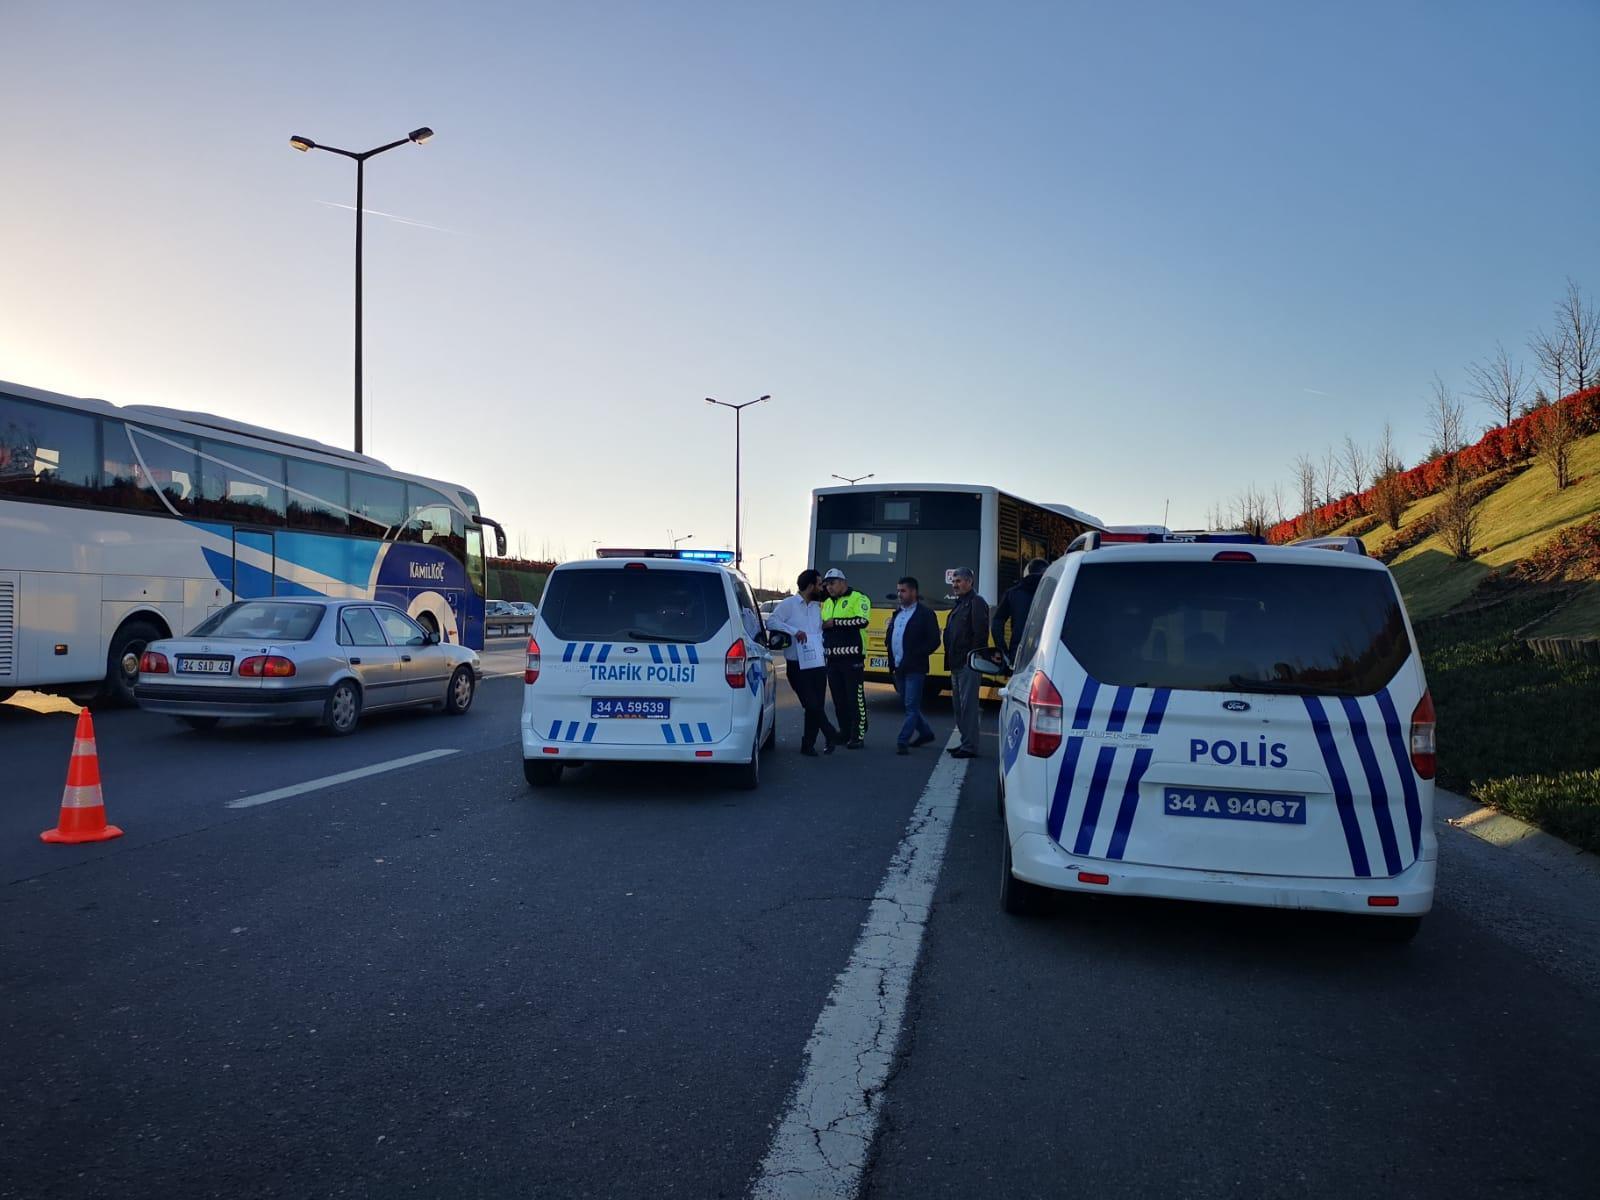 Sancaktepe TEMde İETT otobüsü servis minibüsüne çarptı: 4 yaralı